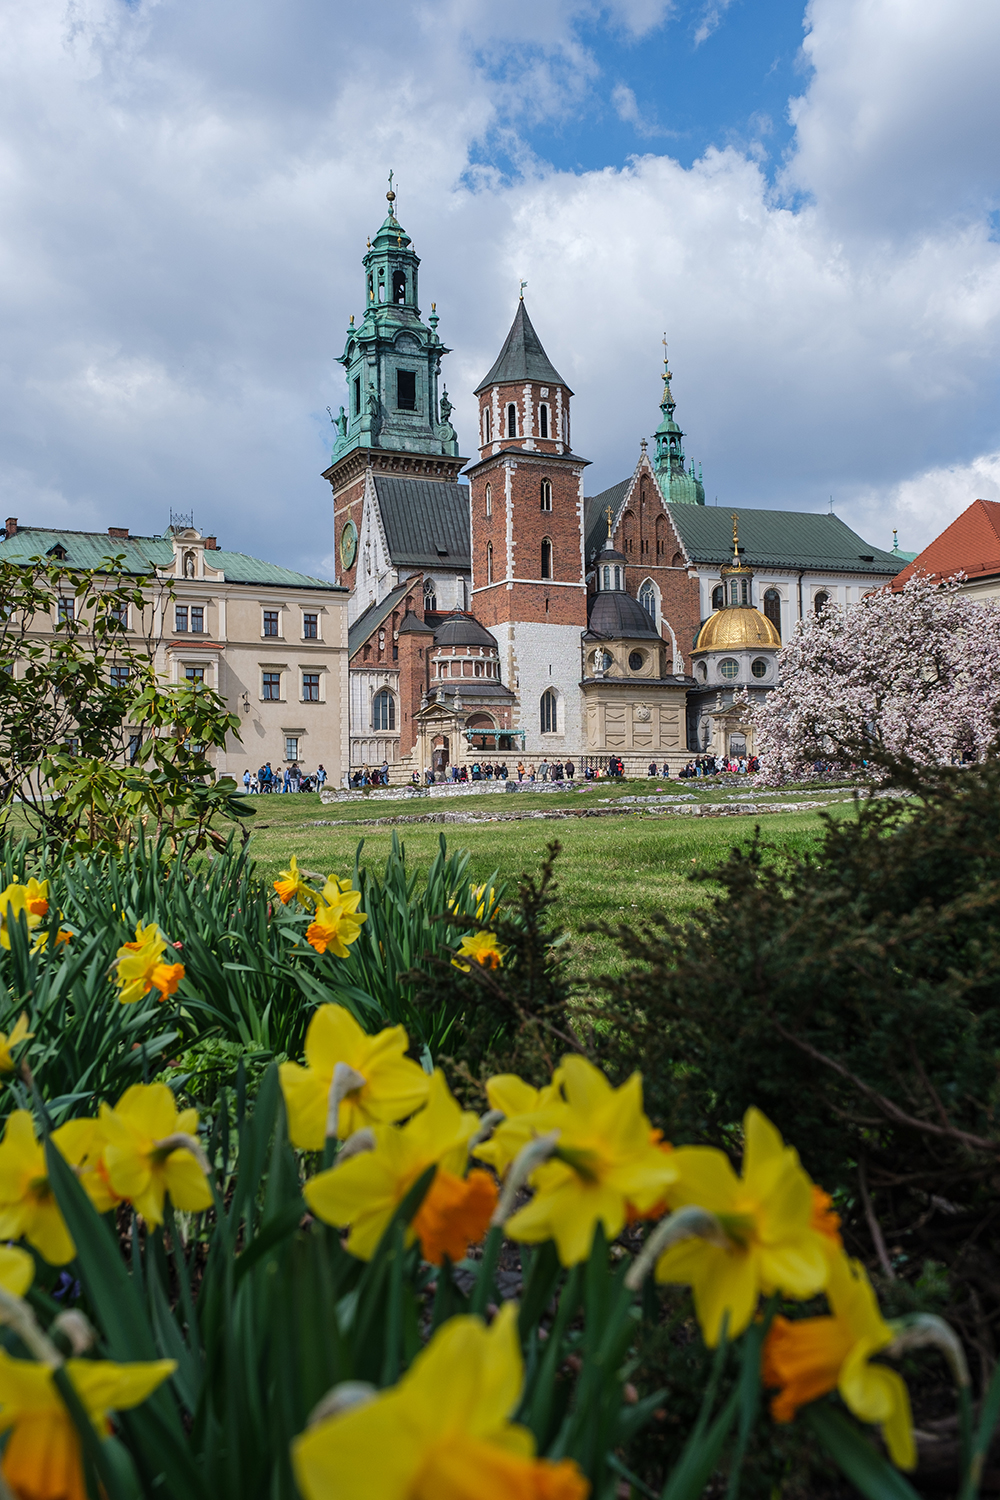 Visiter Cracovie au printemps pour profiter des jardins fleuris